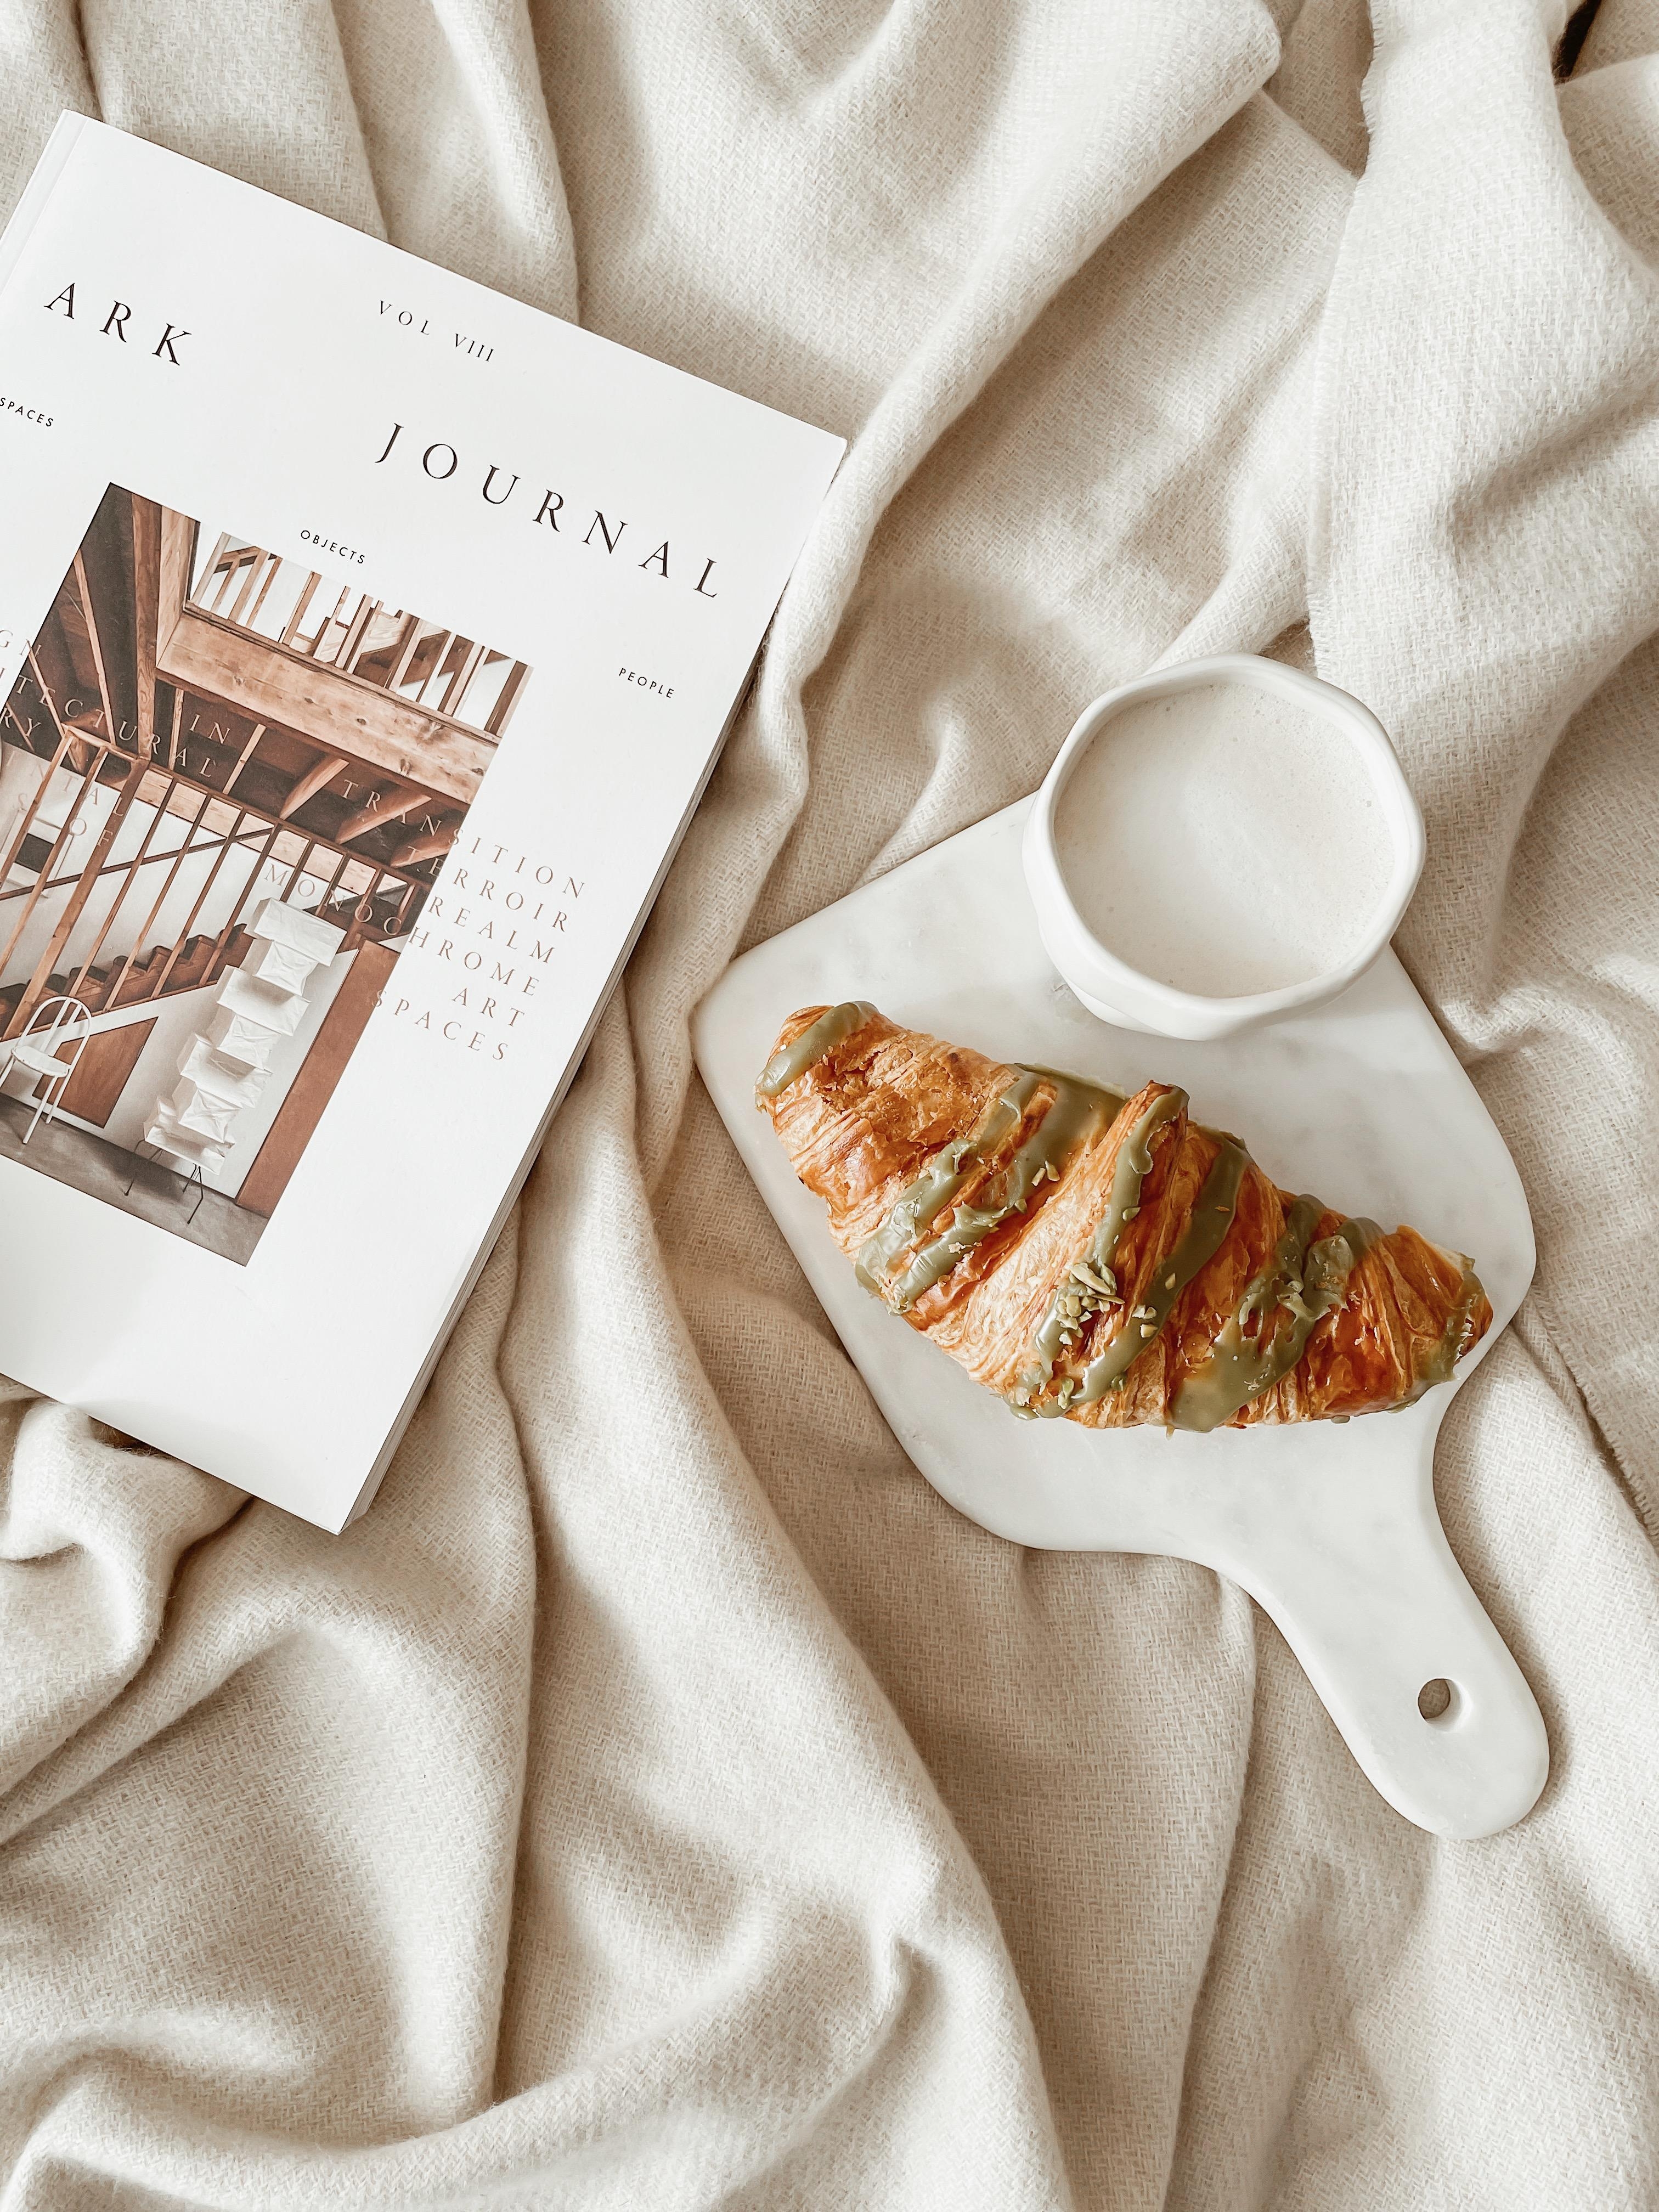 SUNDAYS 🥐☕️✨
... in bed 🫶🏻 Habt einen schönen Sonntag ihr Lieben! 
#sunday #styling #croissant #coffee #decor #aesthetics #interior #beige 